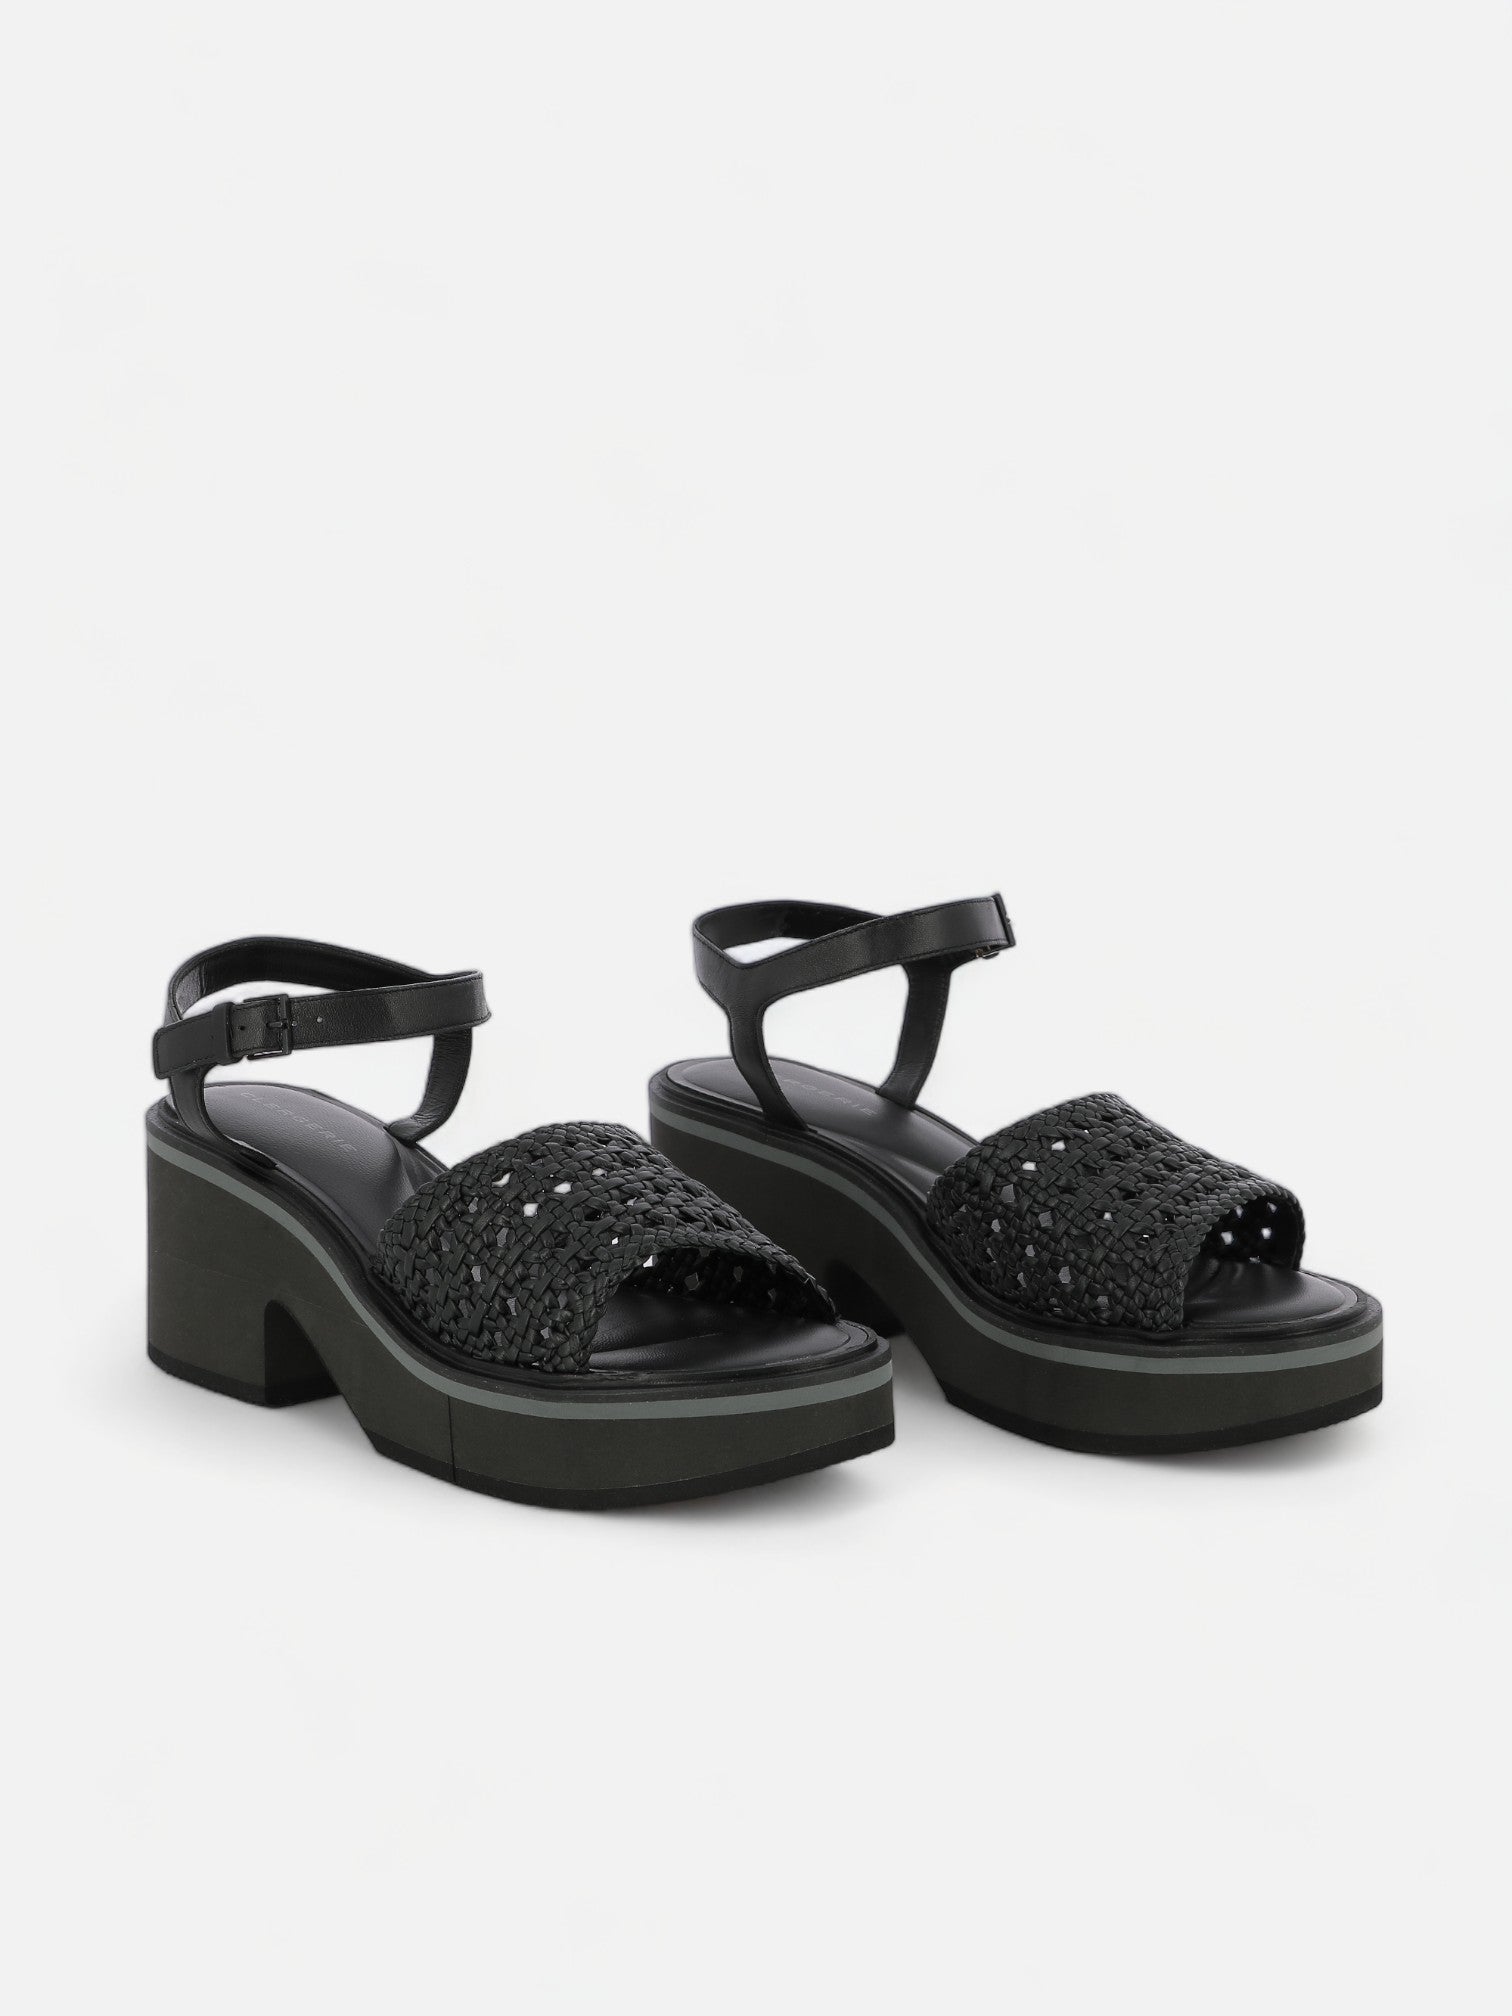 CELITA sandals, black nappa || OUTLET